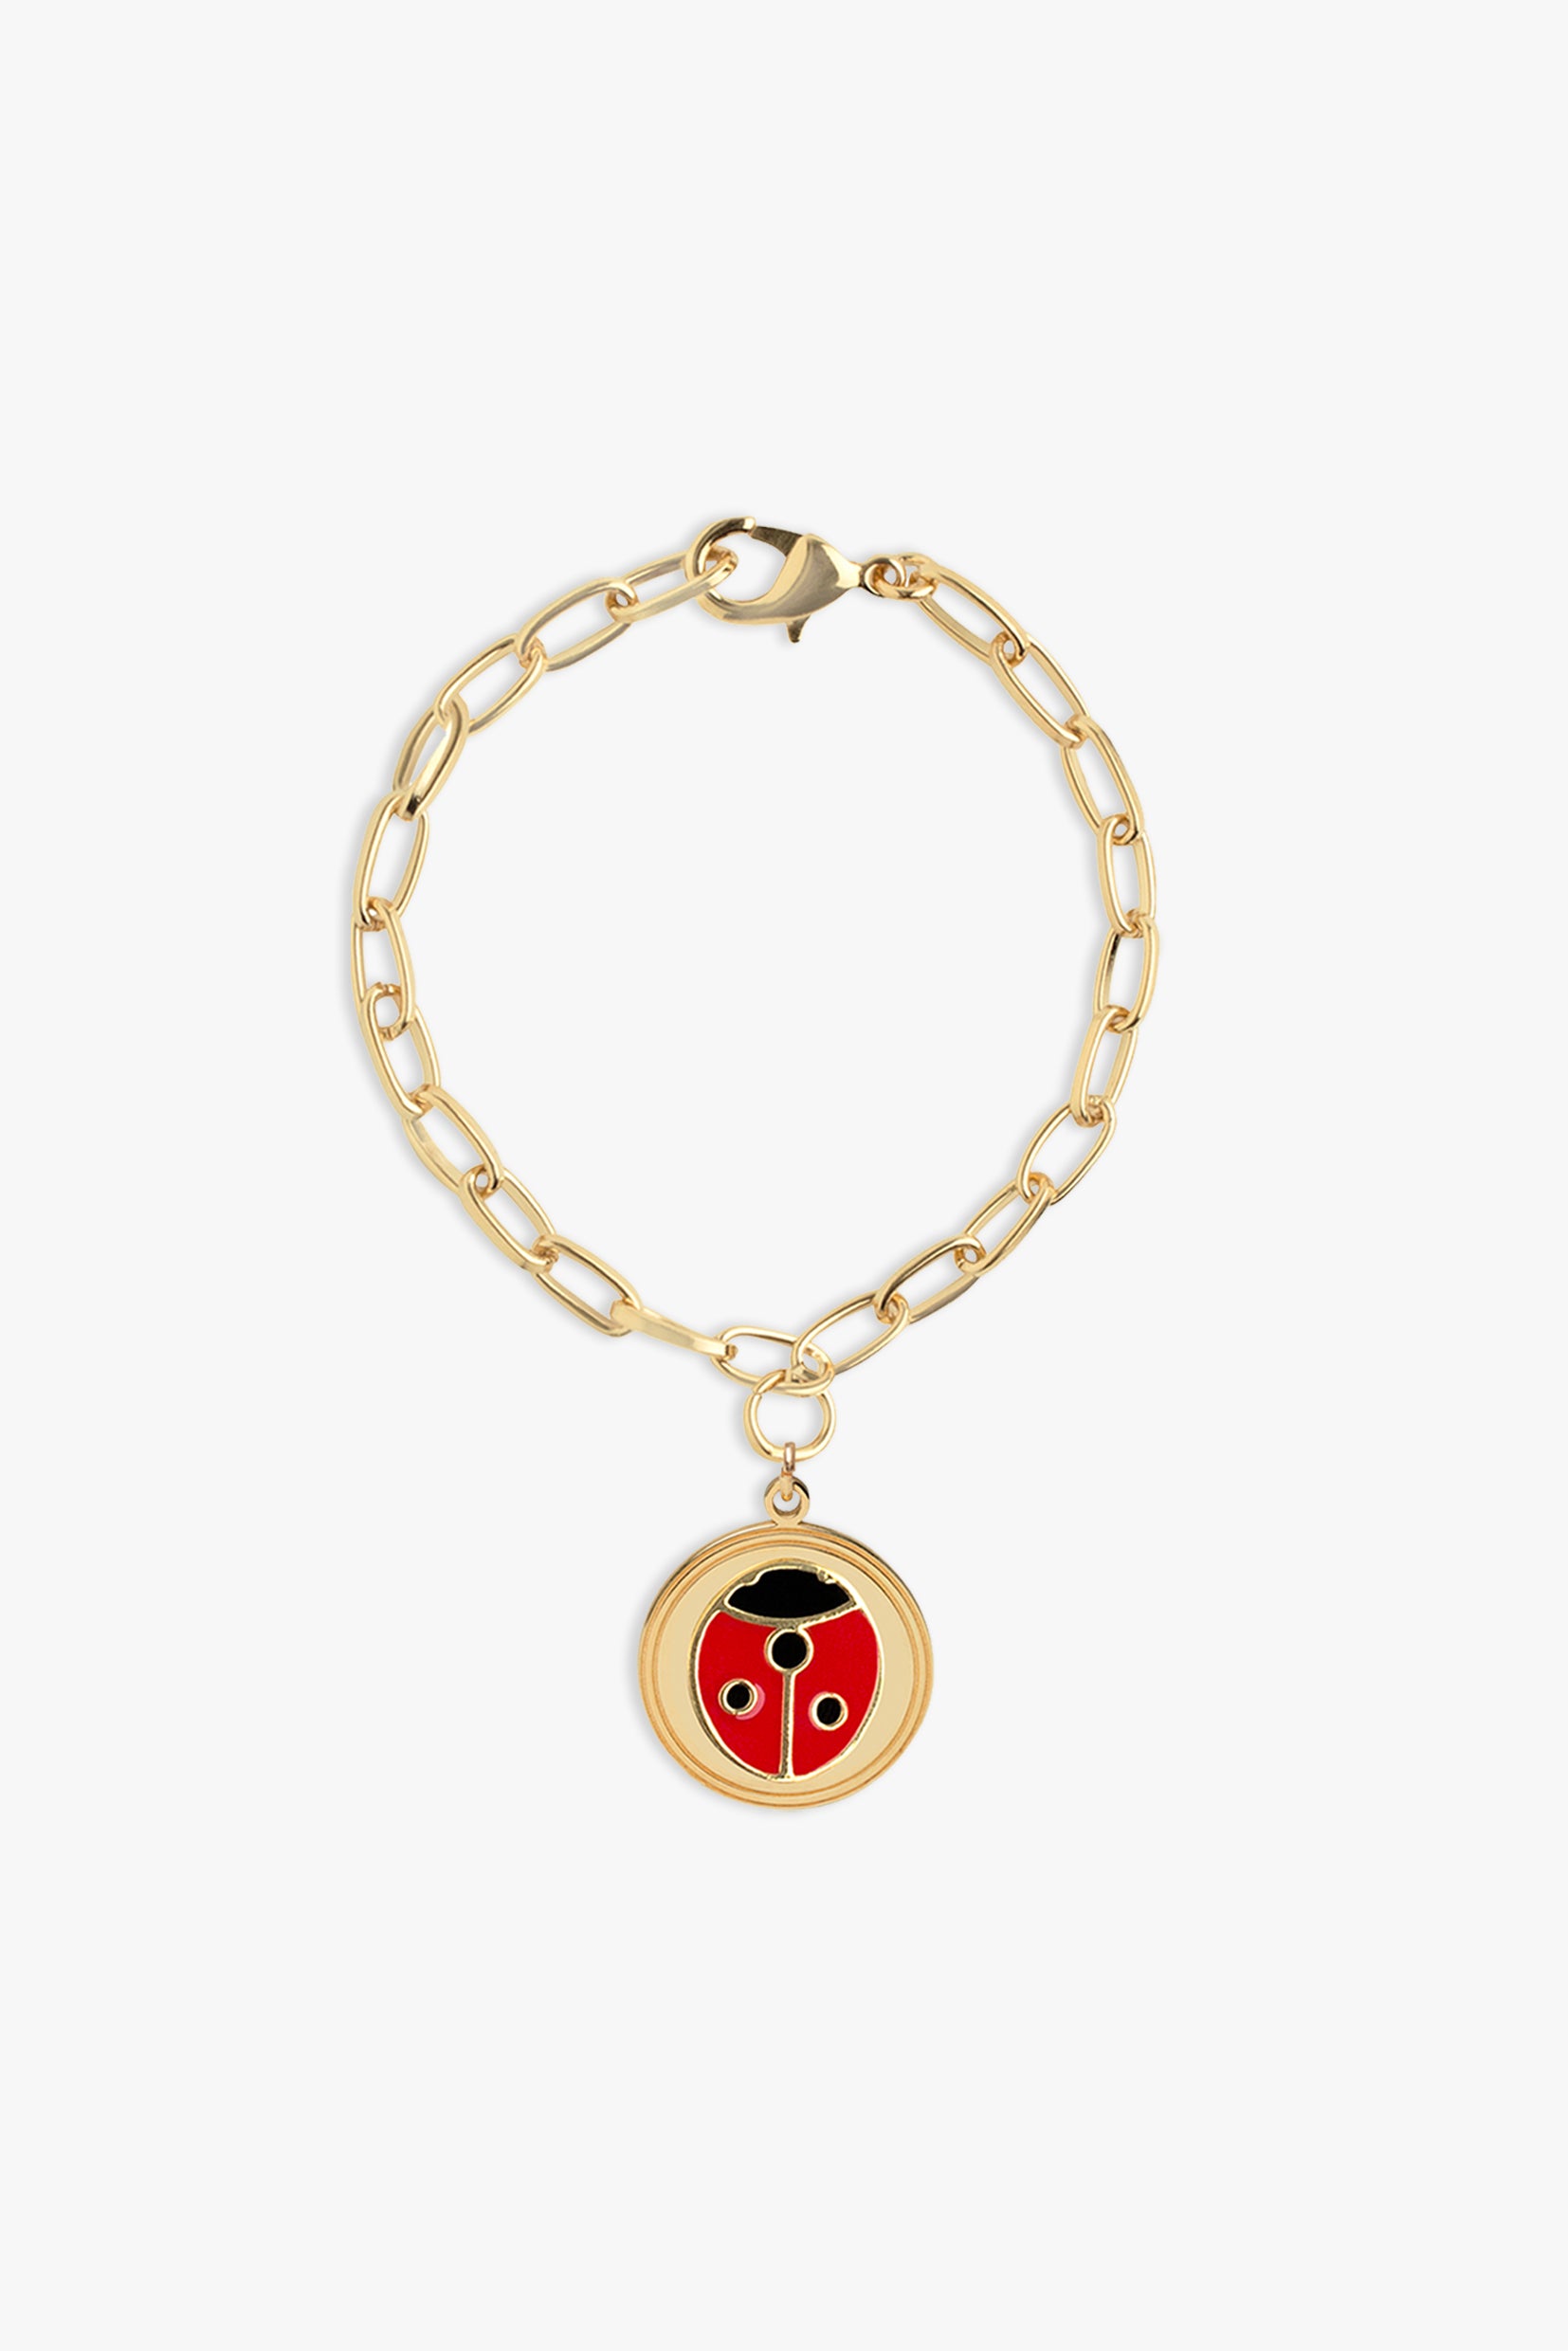 Ladybug Bracelet 14k Yellow Gold Enamel 6.75 8mm Luck Insect Jewelry –  Jewelryauthority